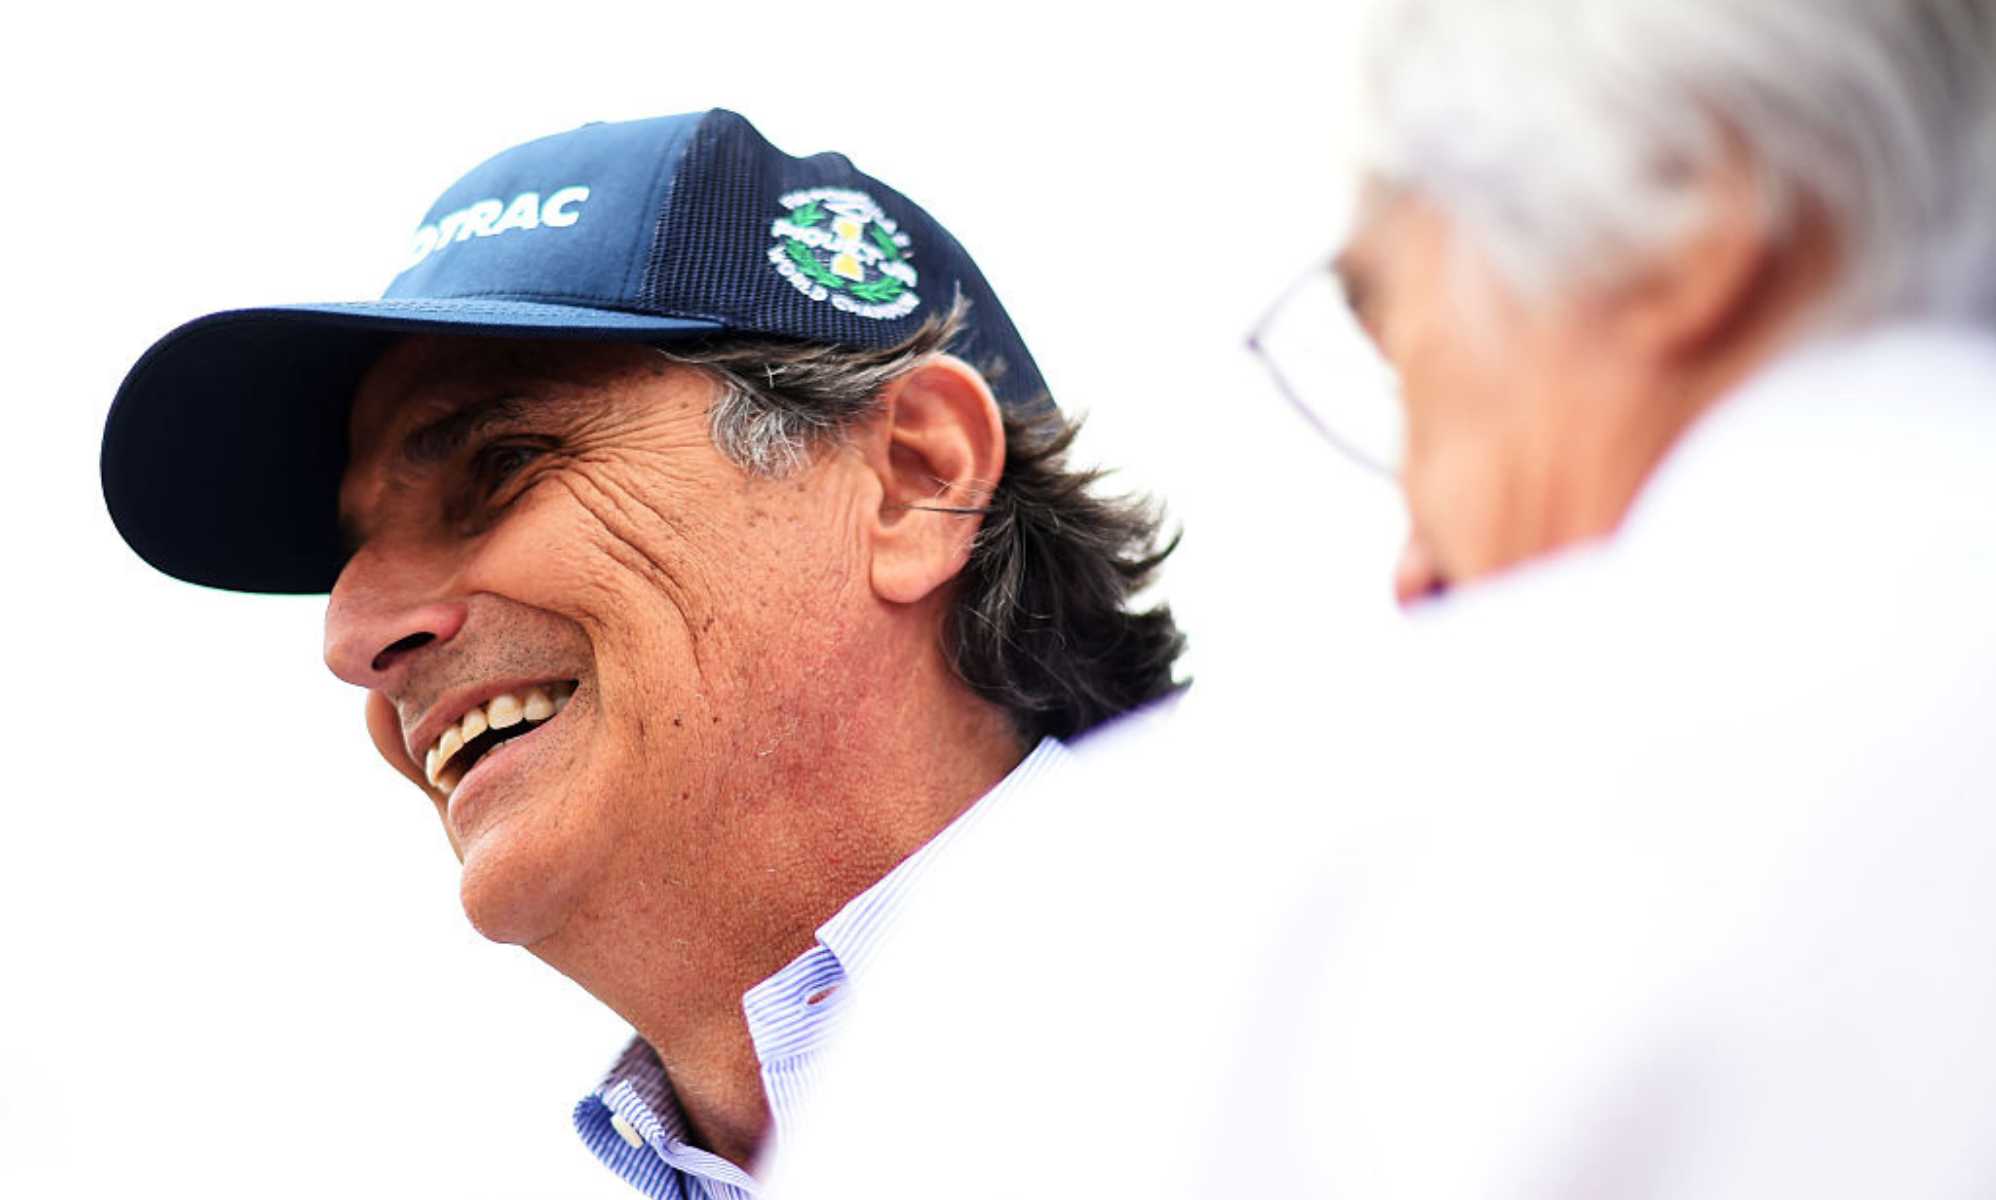 El excampeón Nelson Piquet ha sido multado por insultar a Lewis Hamilton